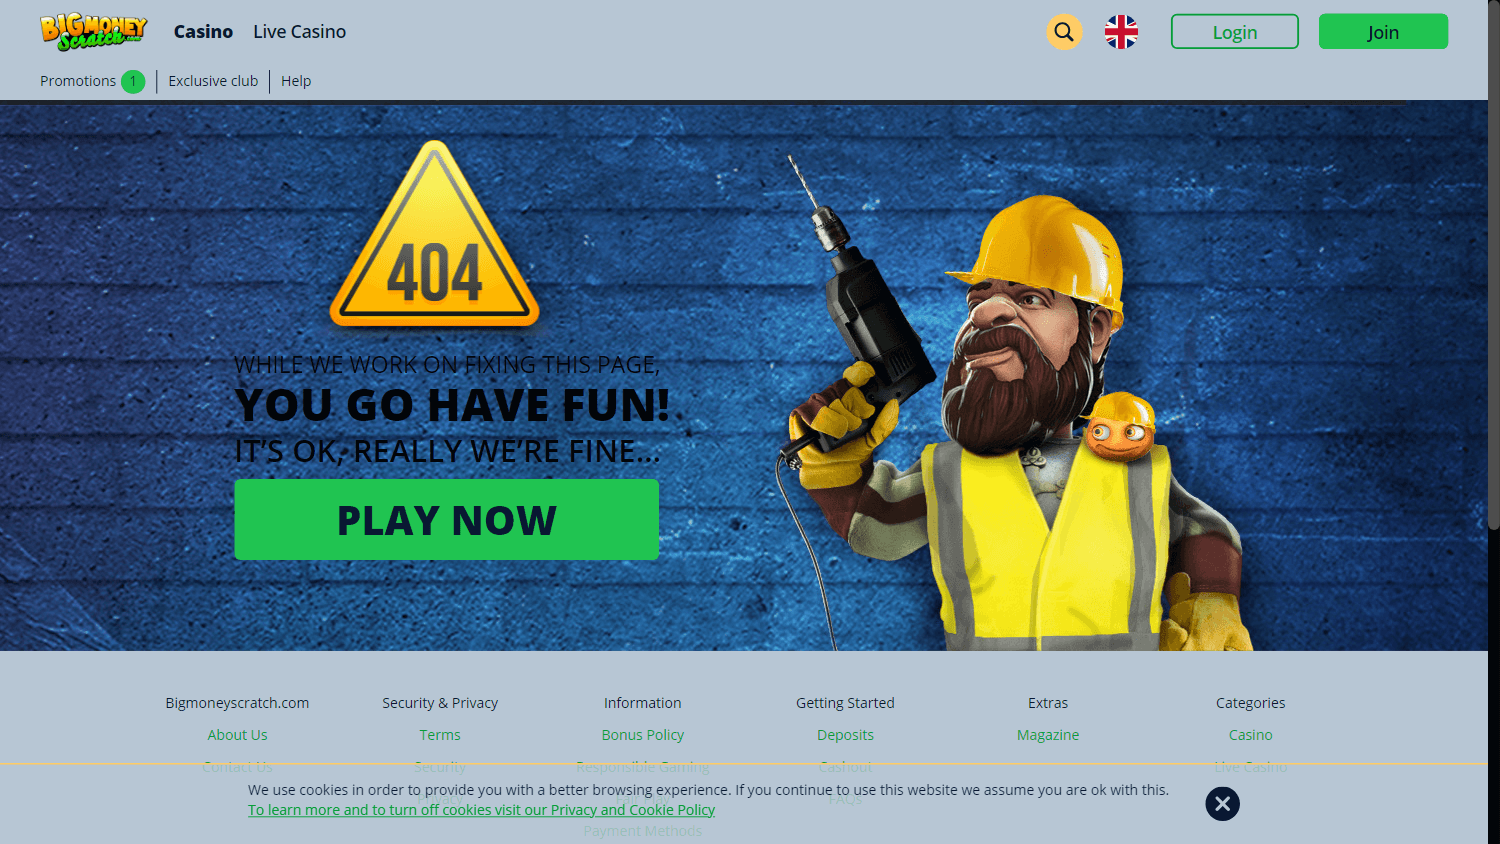 bigmoneyscratch_casino_homepage_desktop